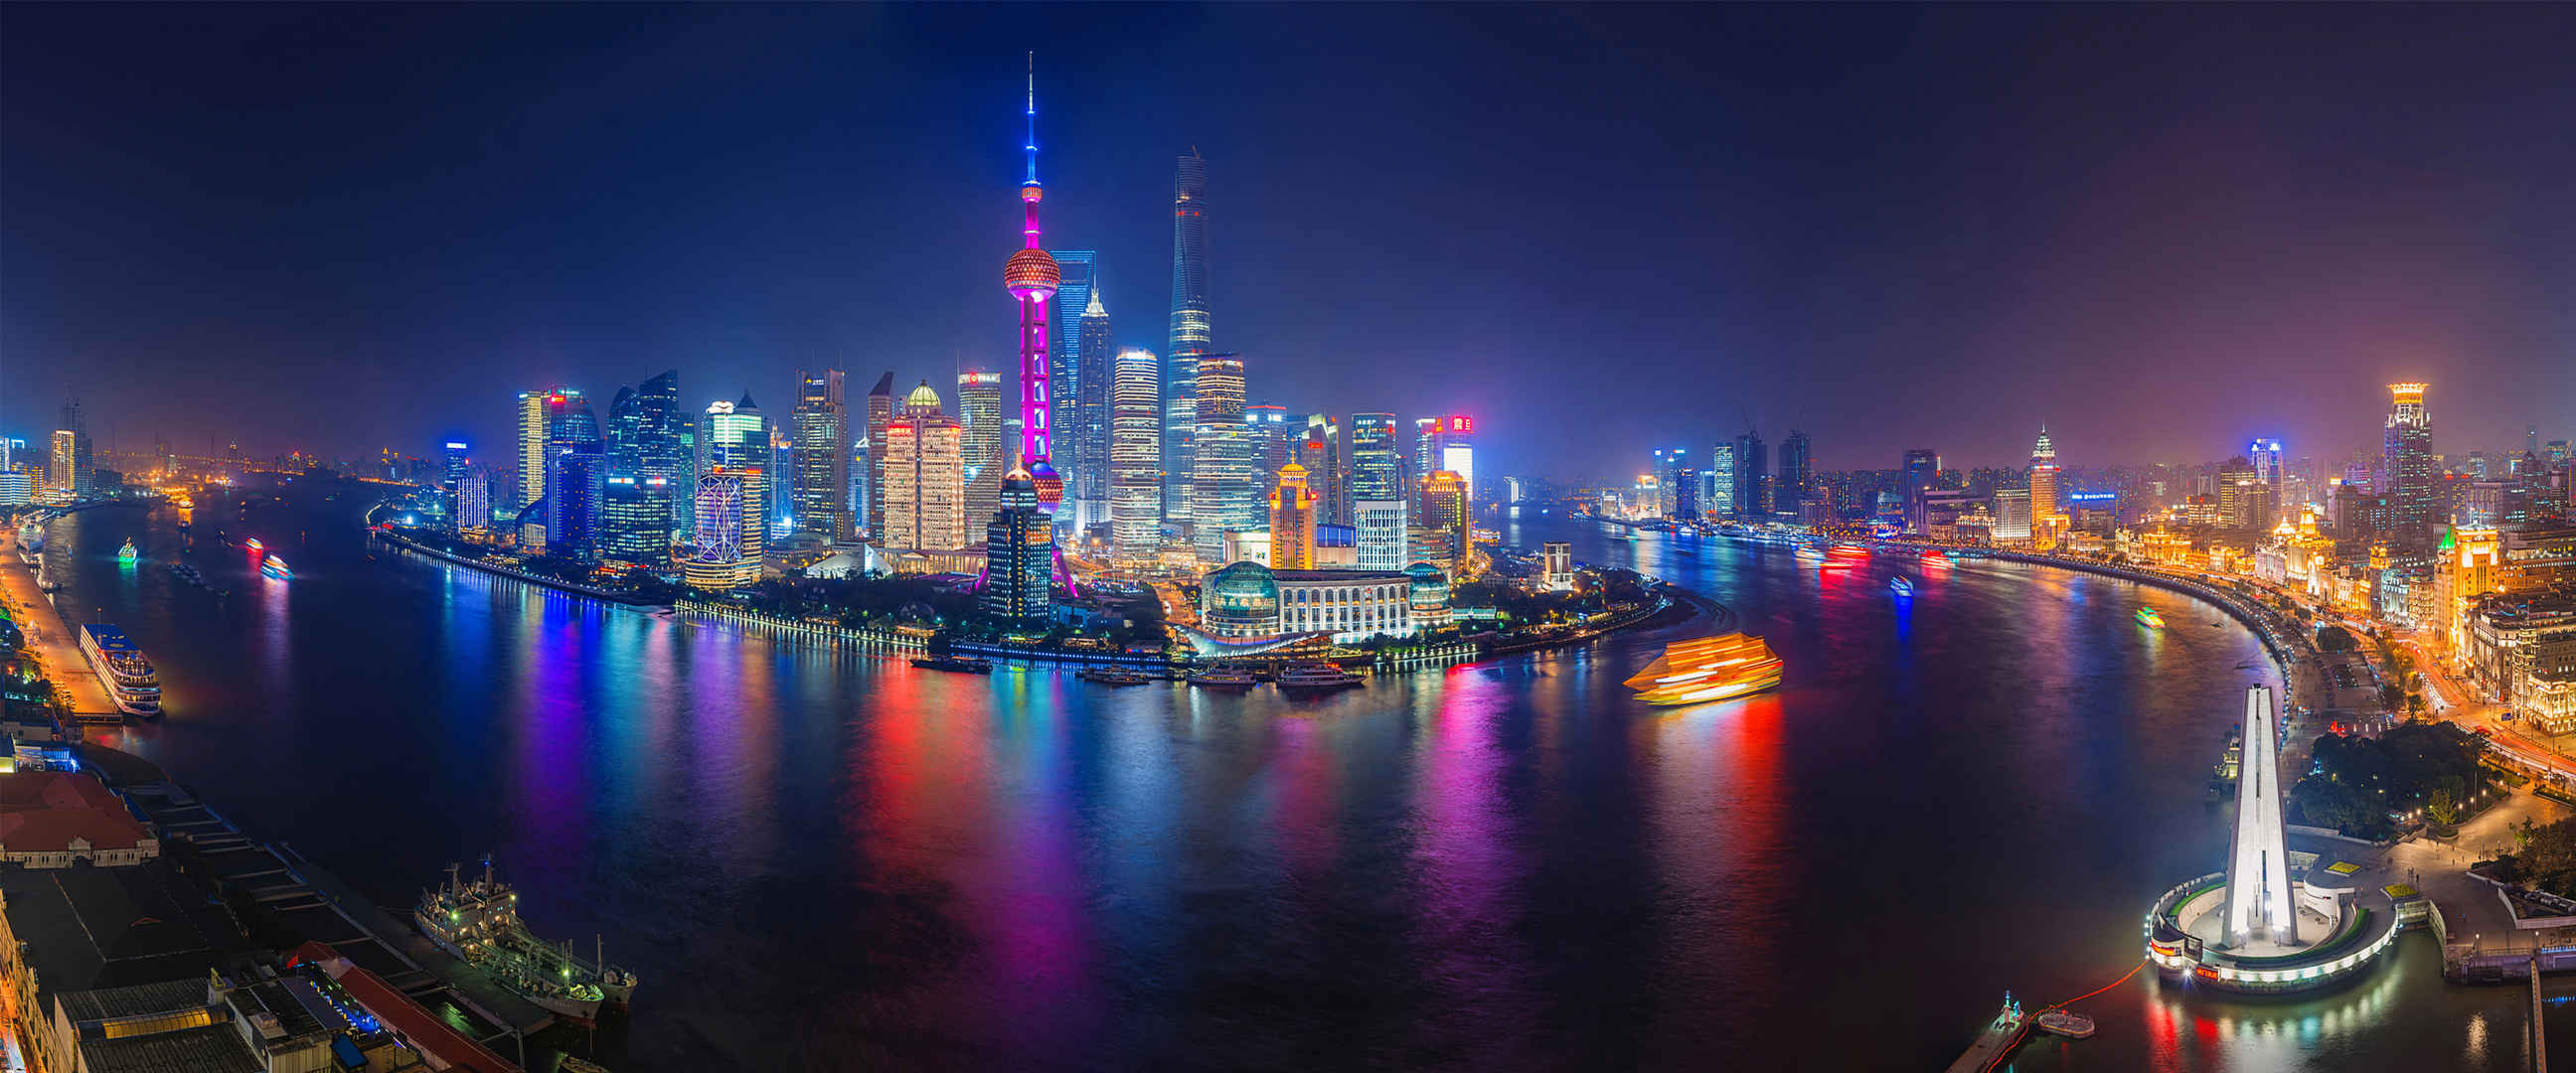 上海东方明珠江景夜色高清壁纸-